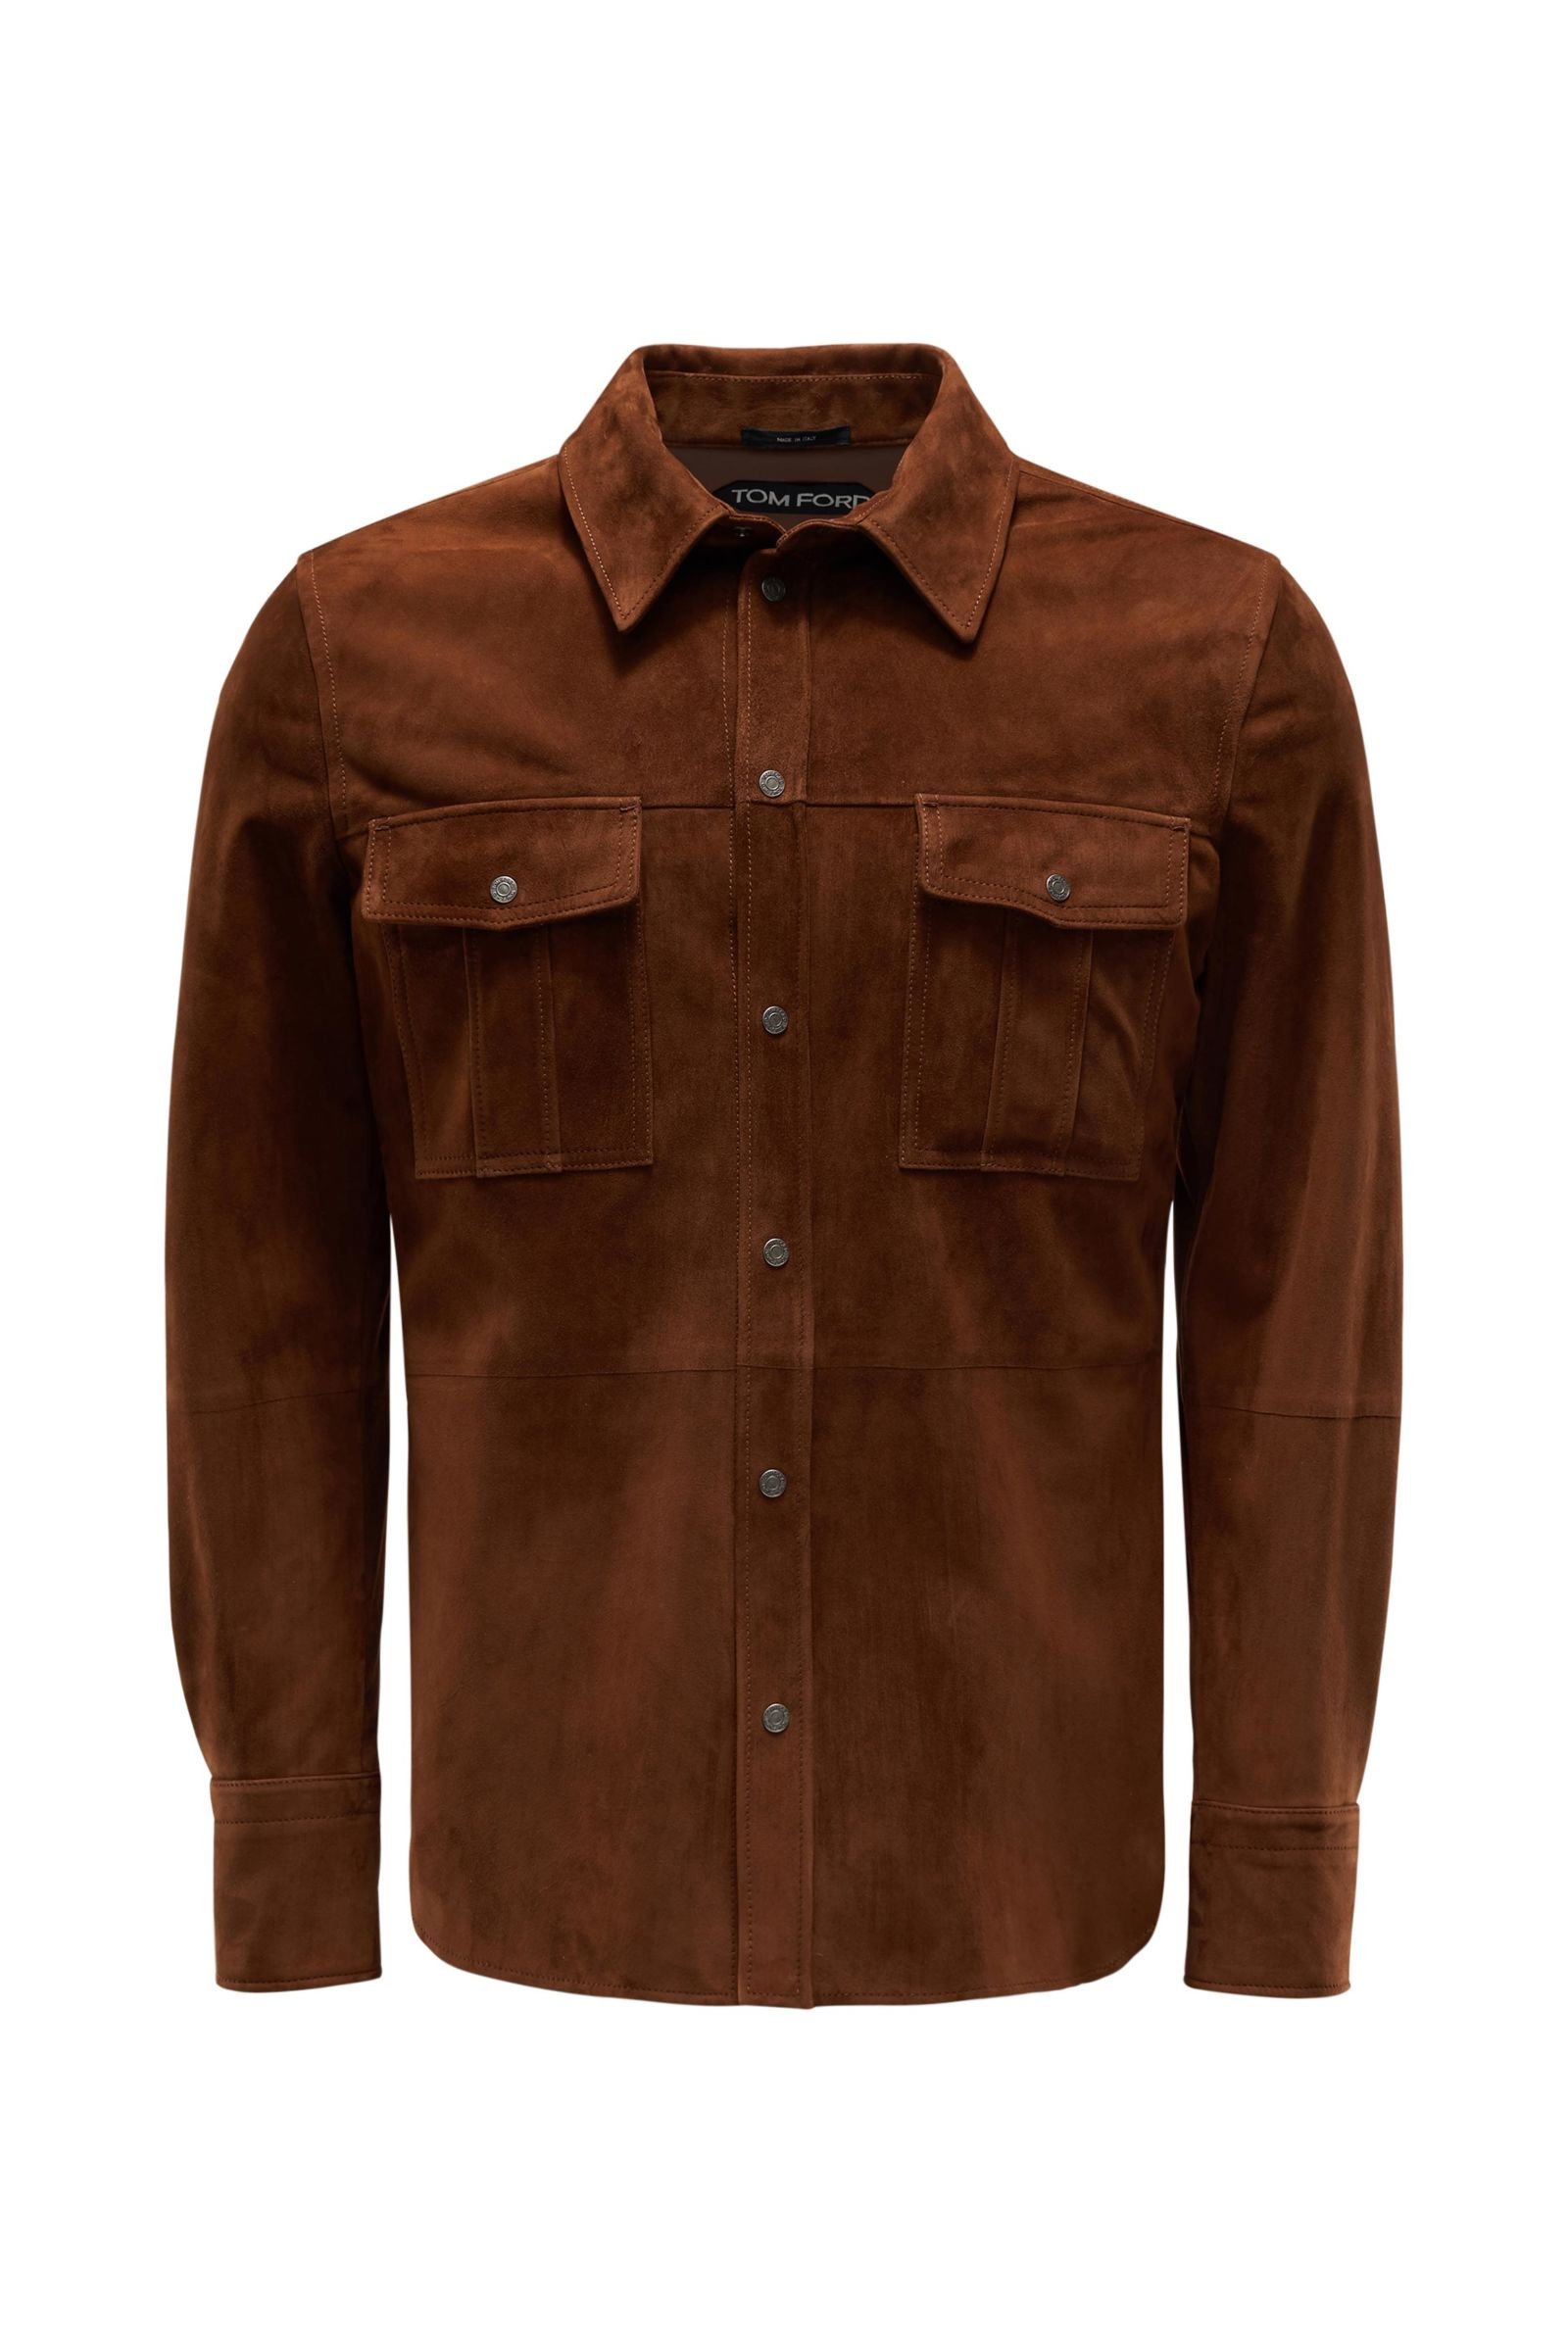 Suede jacket brown